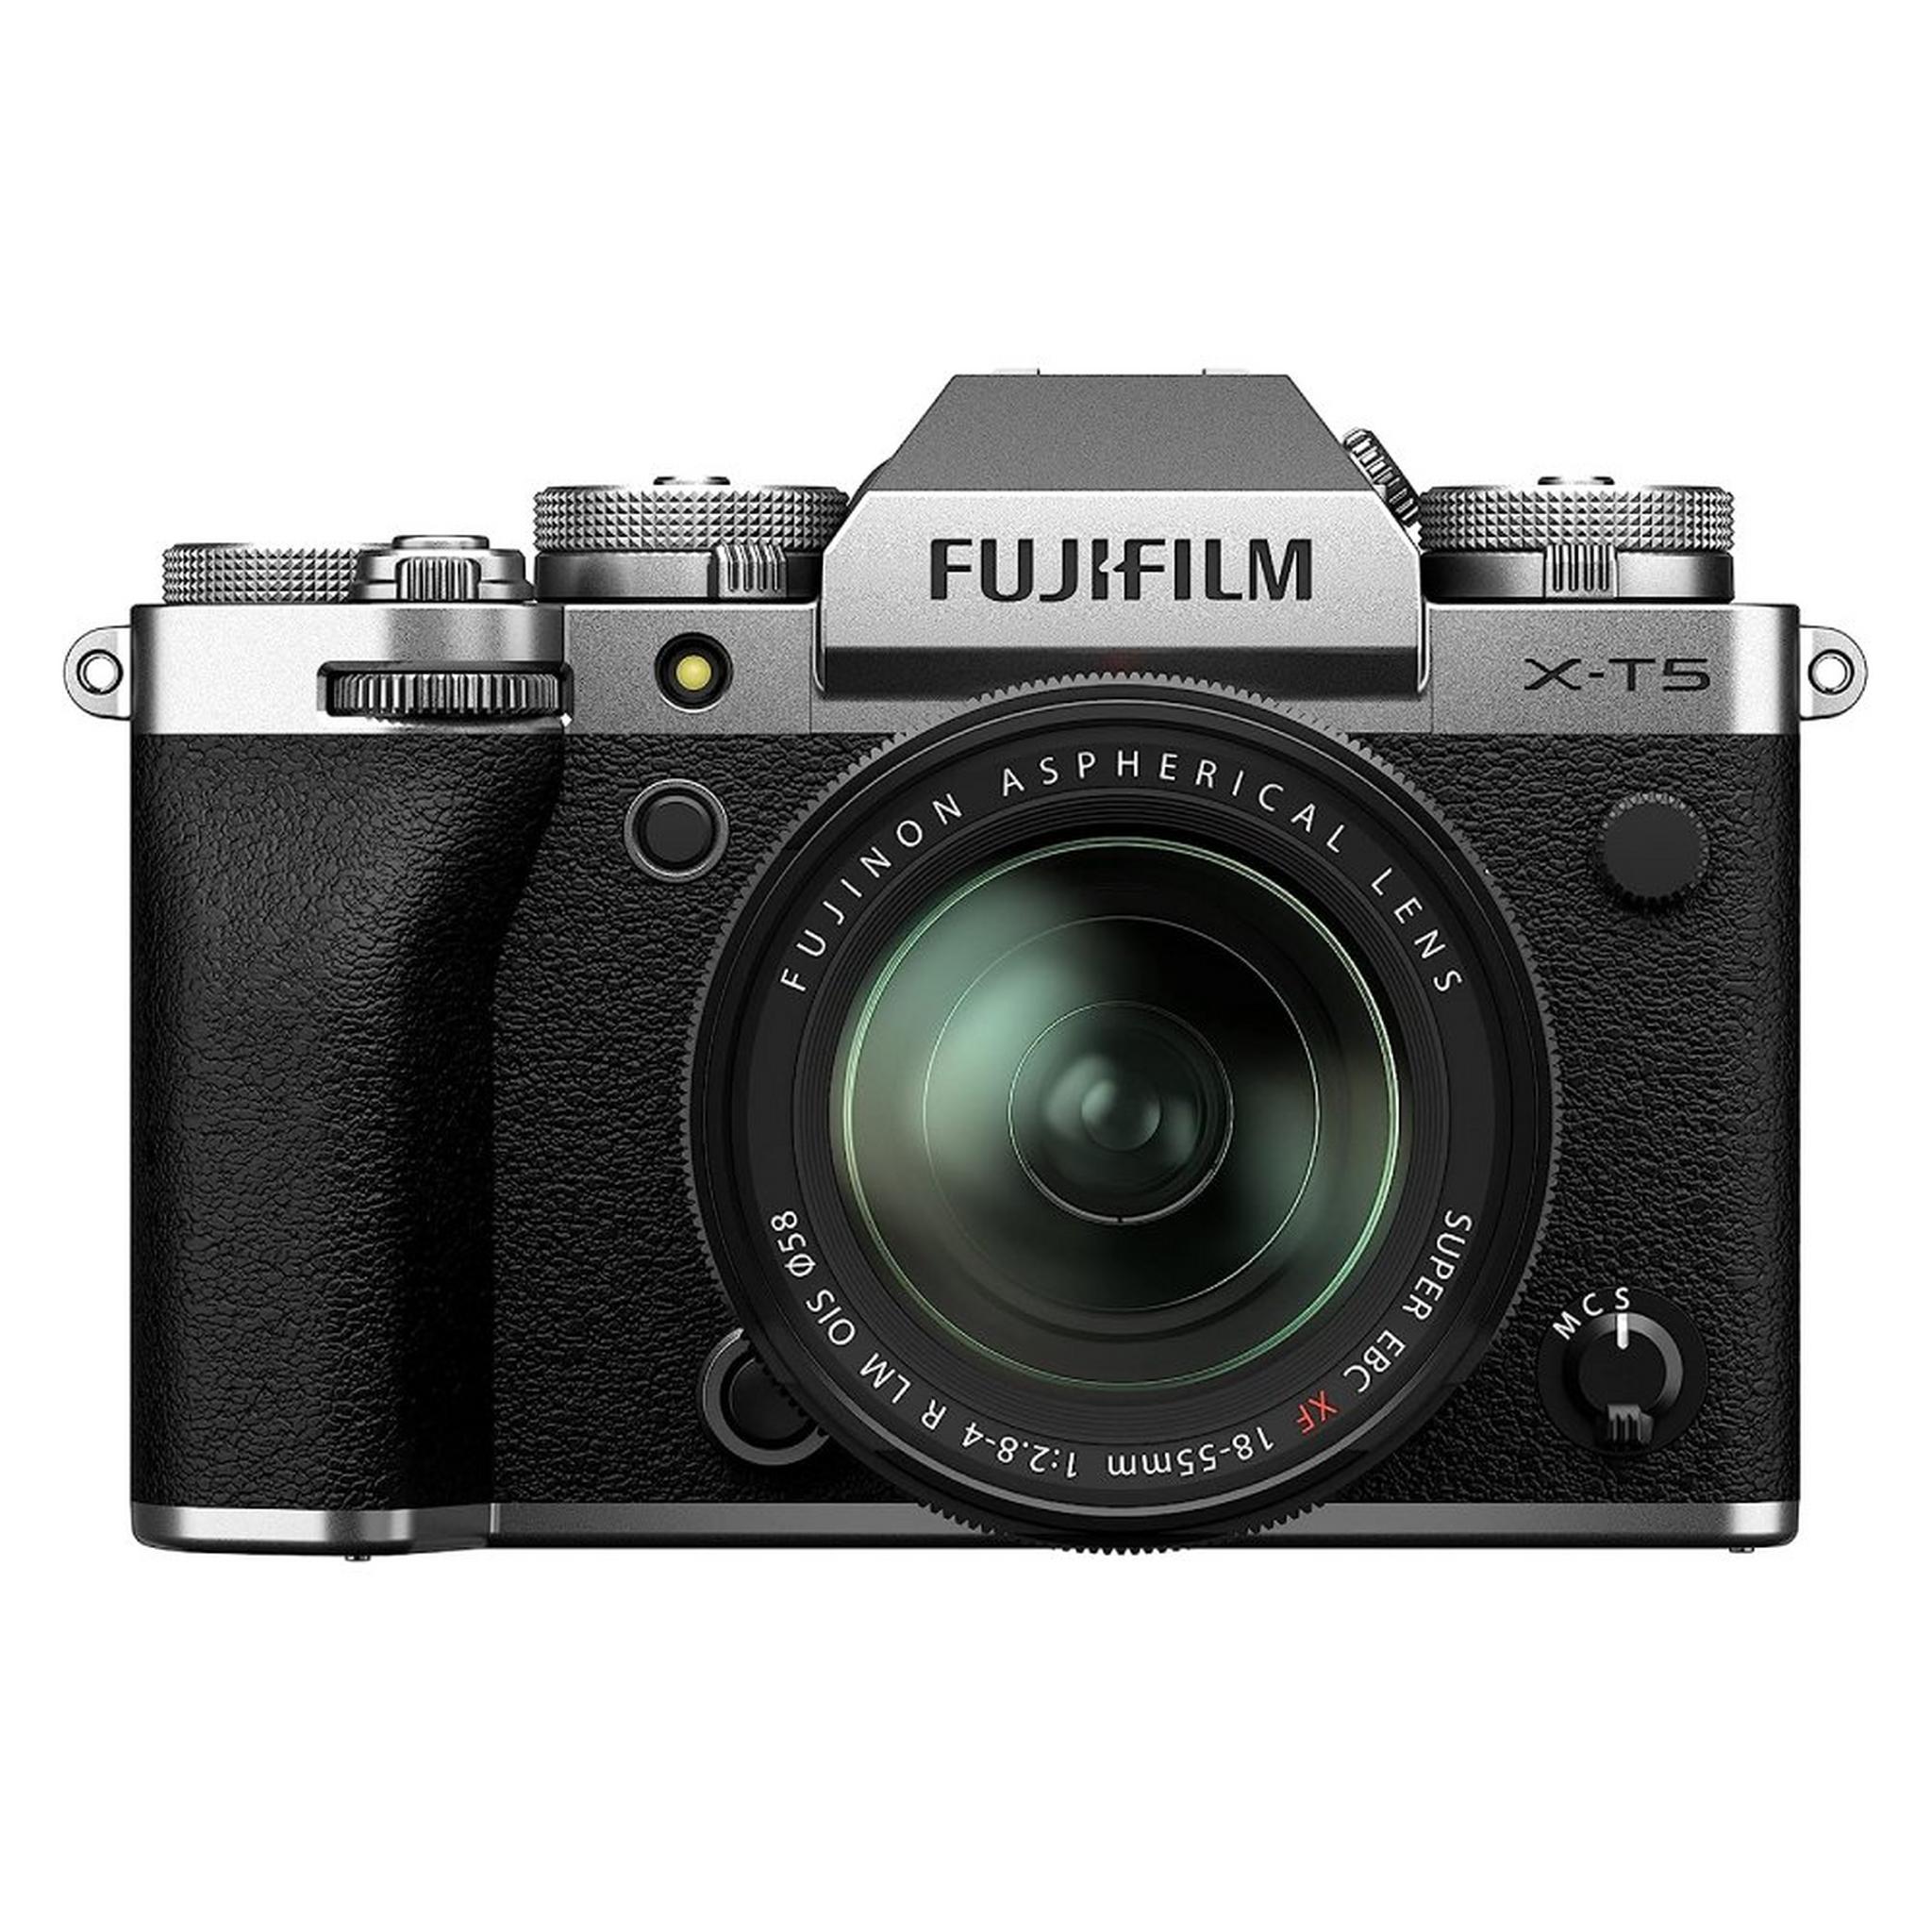 كاميرا ديجيتال بدون مرآة من فوجيفيلم + عدسة اكس اف 18-55 ملم، X-T5 – فضي